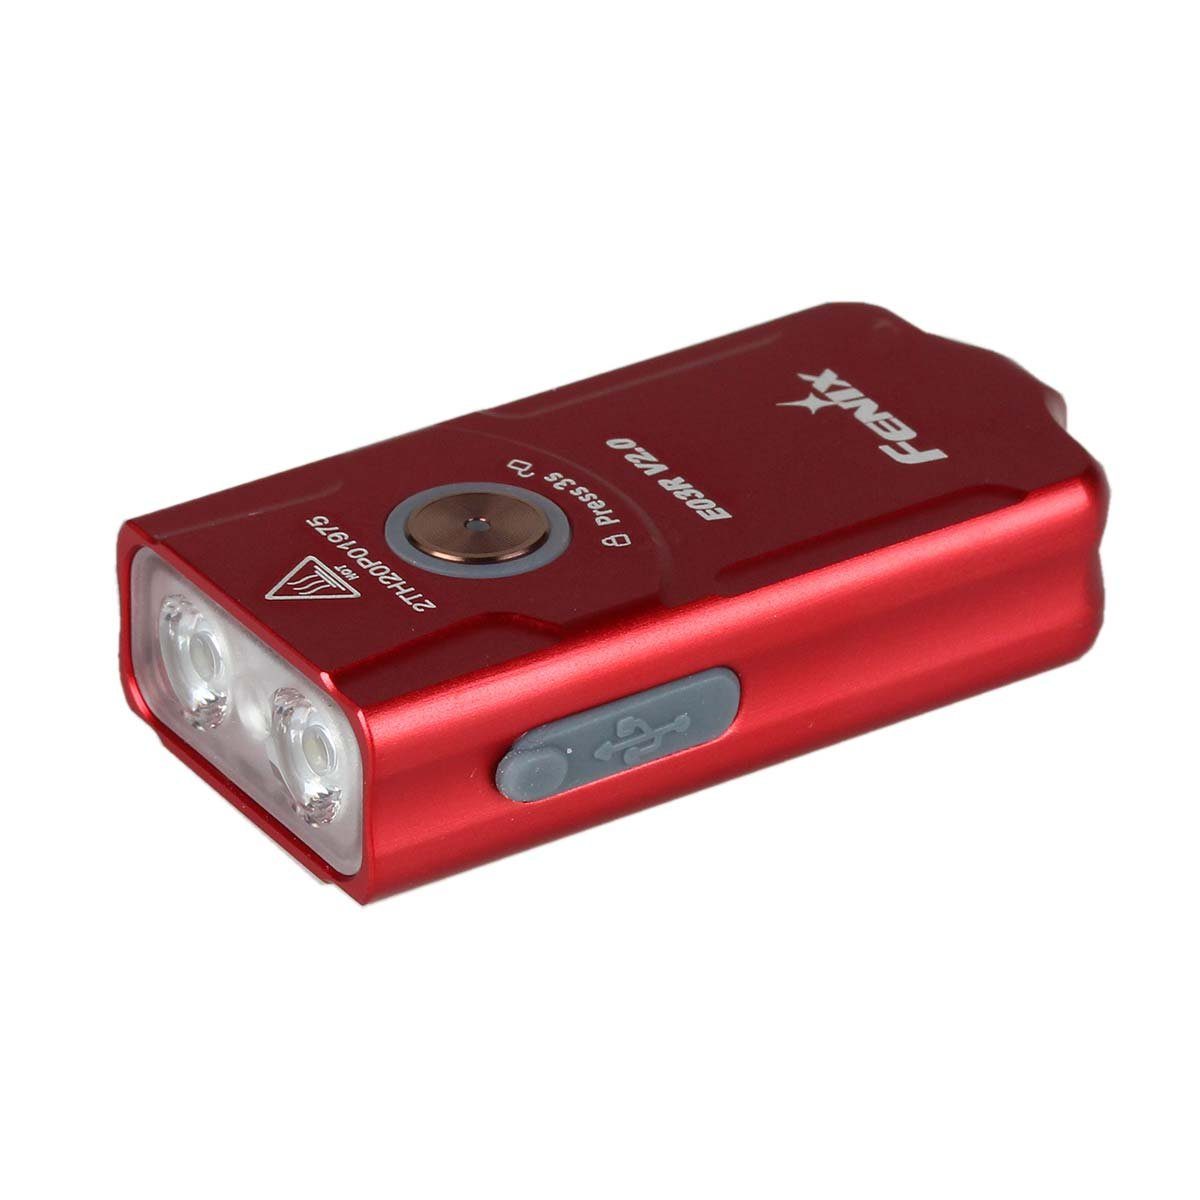 Fenix LED Taschenlampe E03R V2.0 LED Schlüsselbundleuchte Limited Edition rose red